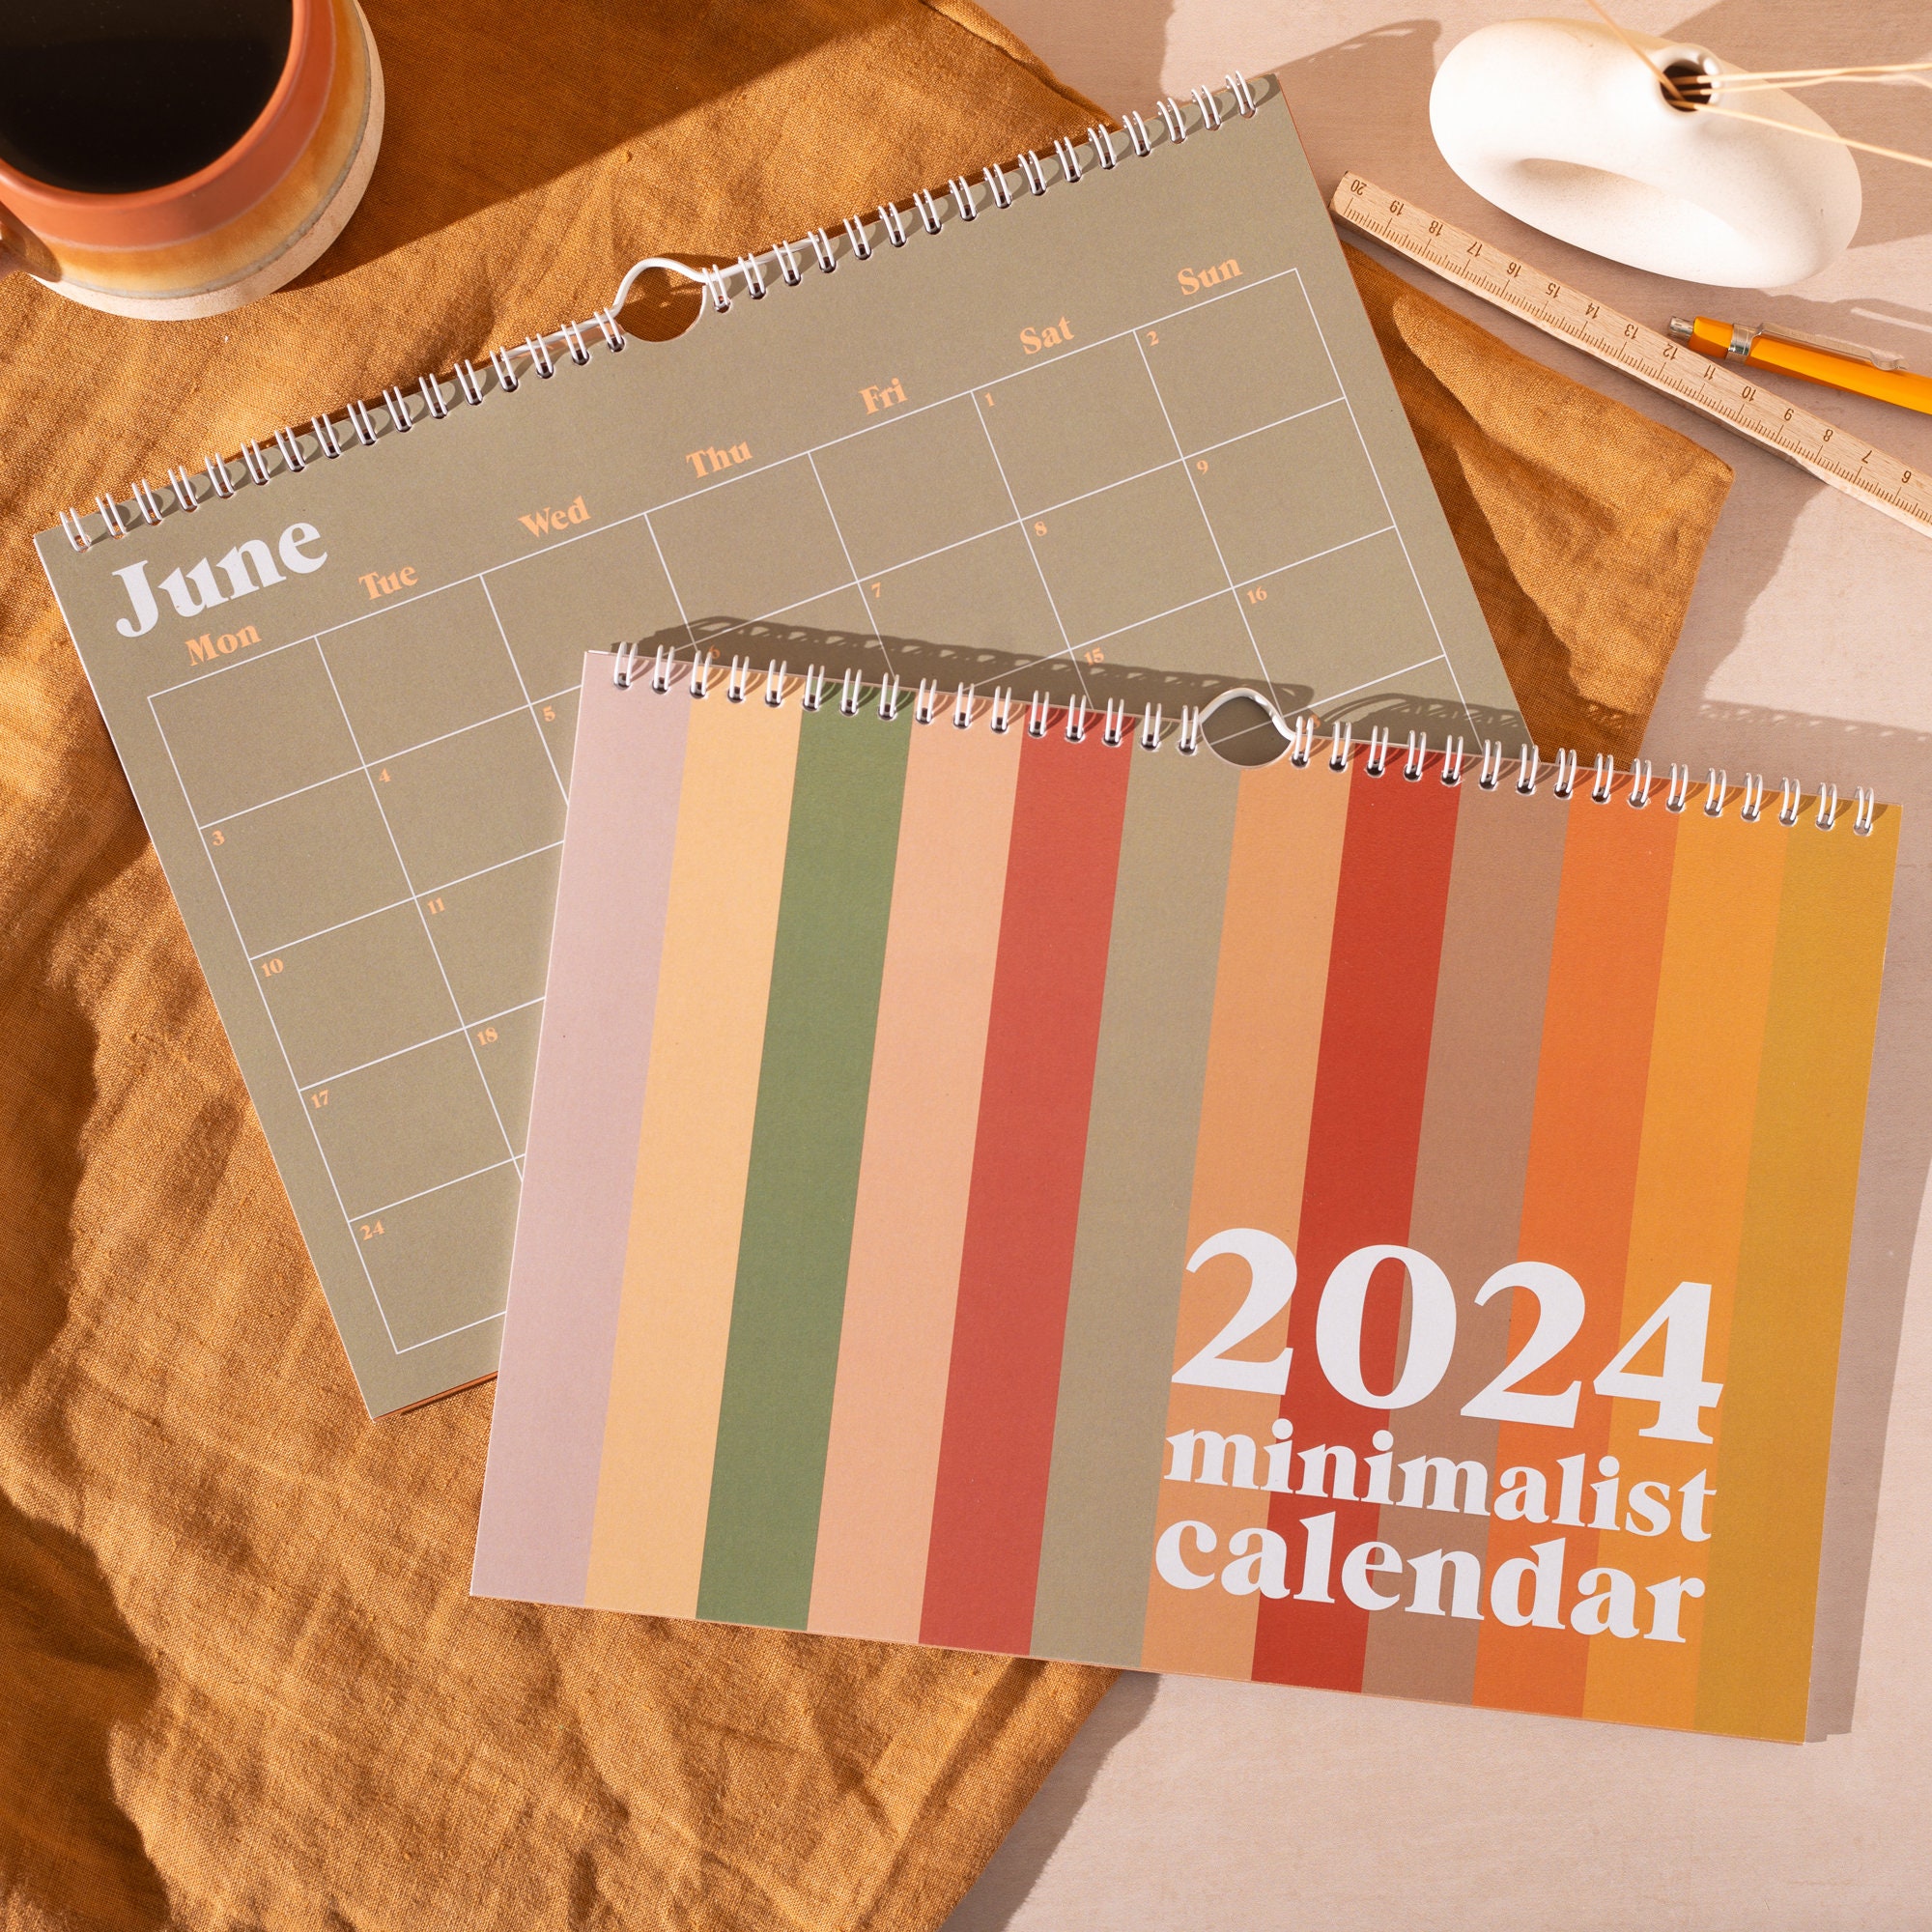 2024 Desk Calendar - 12 Months Large Desk Calendar 2024, Jan. 2024 - Dec.  2024, 17 x 12, Corner Protectors, Hanging Hook, Desk/Wall Calendar for